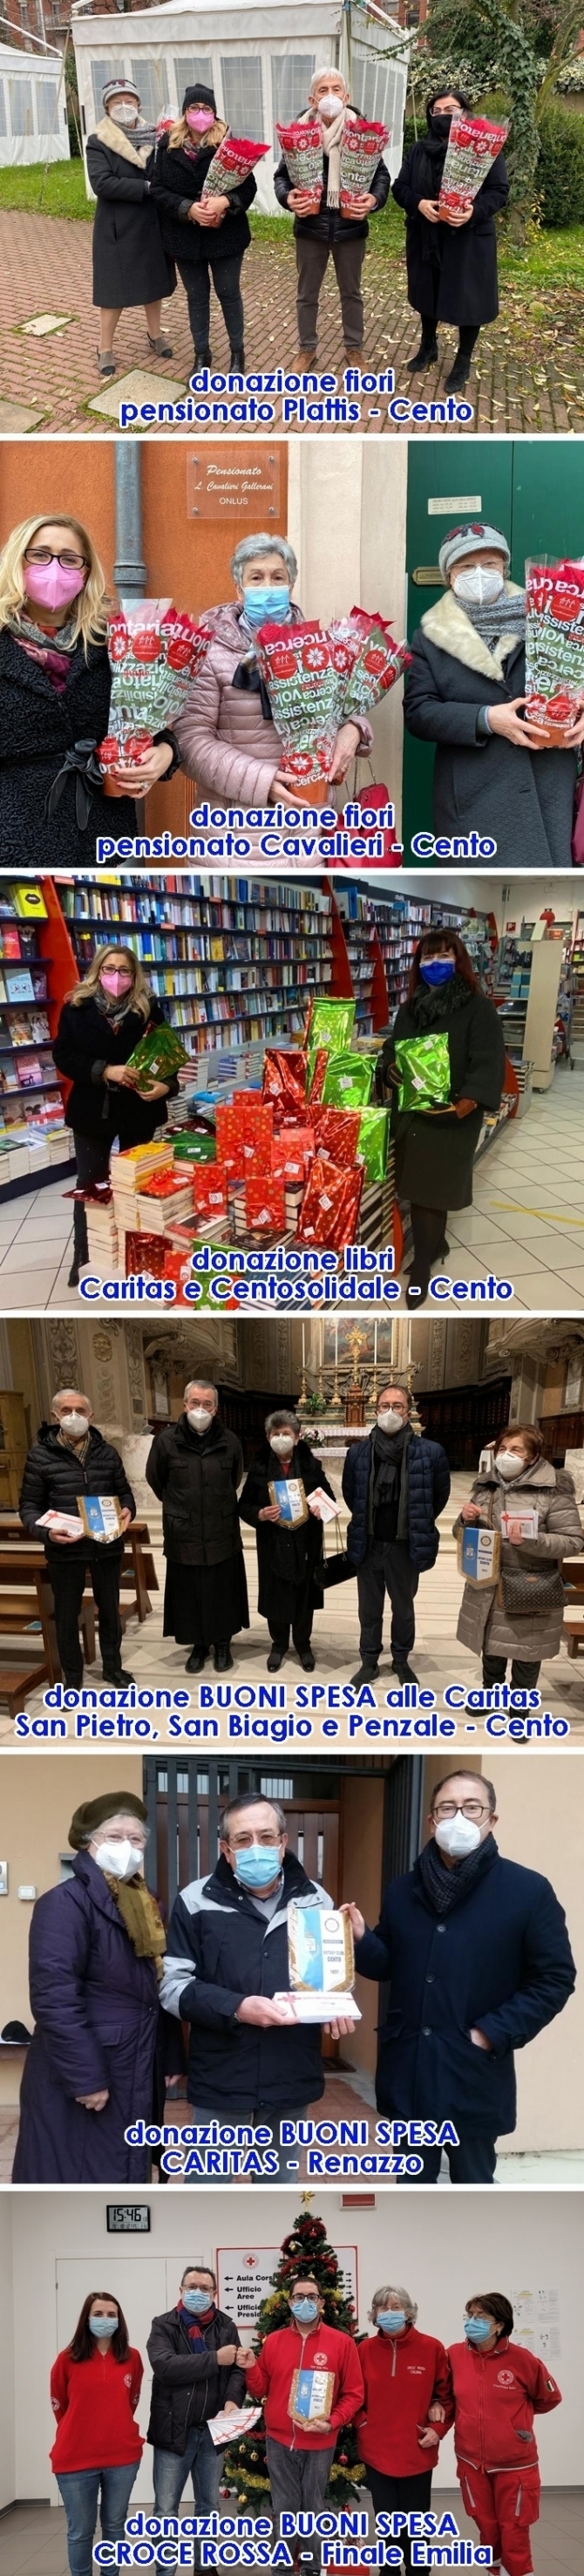 Venerdì 18 Dicembre: ... altre donazioni sul territorio - ROTARY CLUB di CENTO